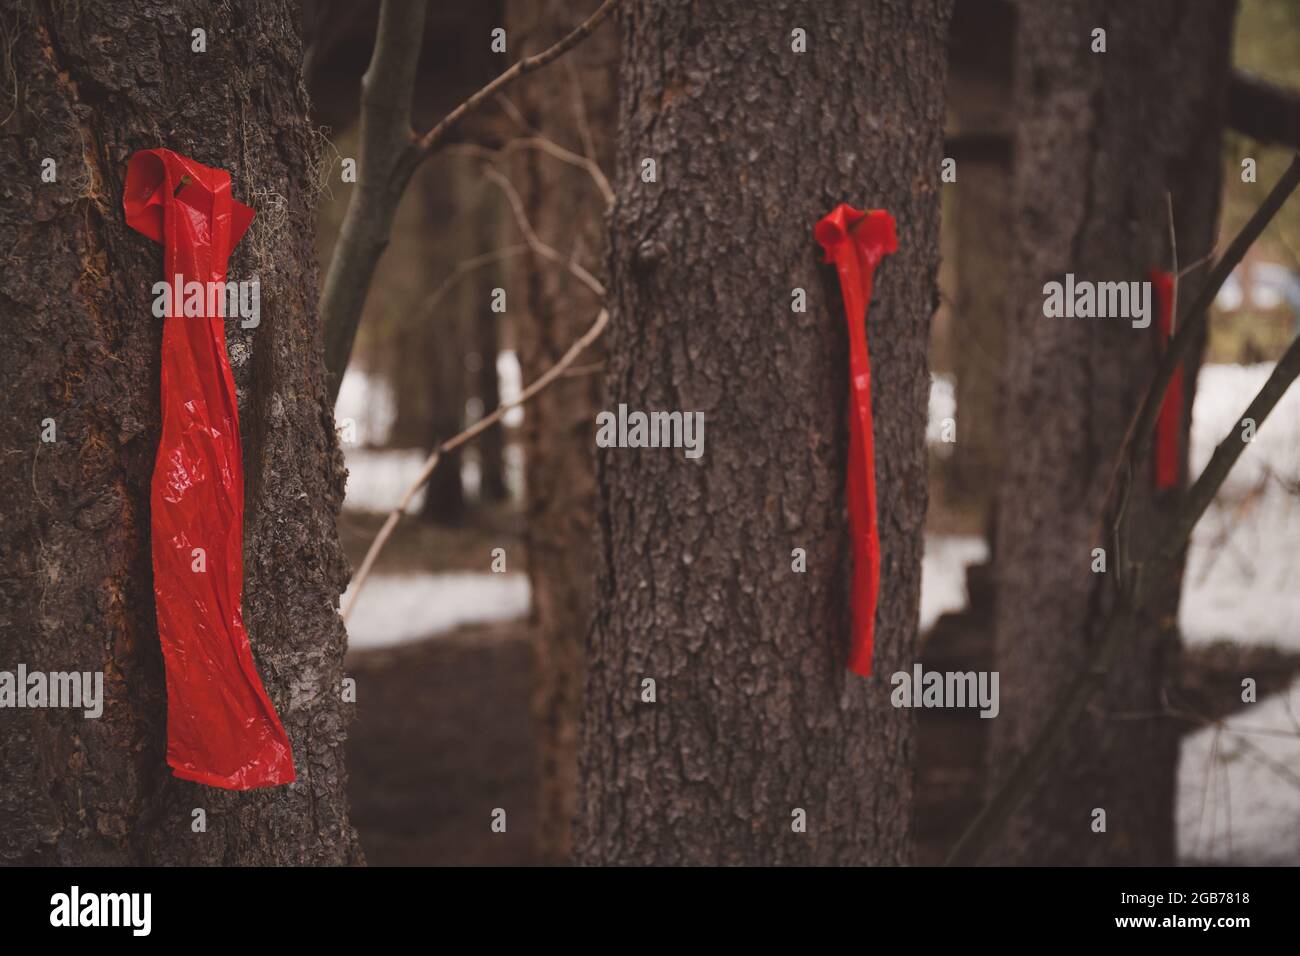 Banderas rojas Marcación de árboles de abeto a ser cortados y removidos Foto de stock